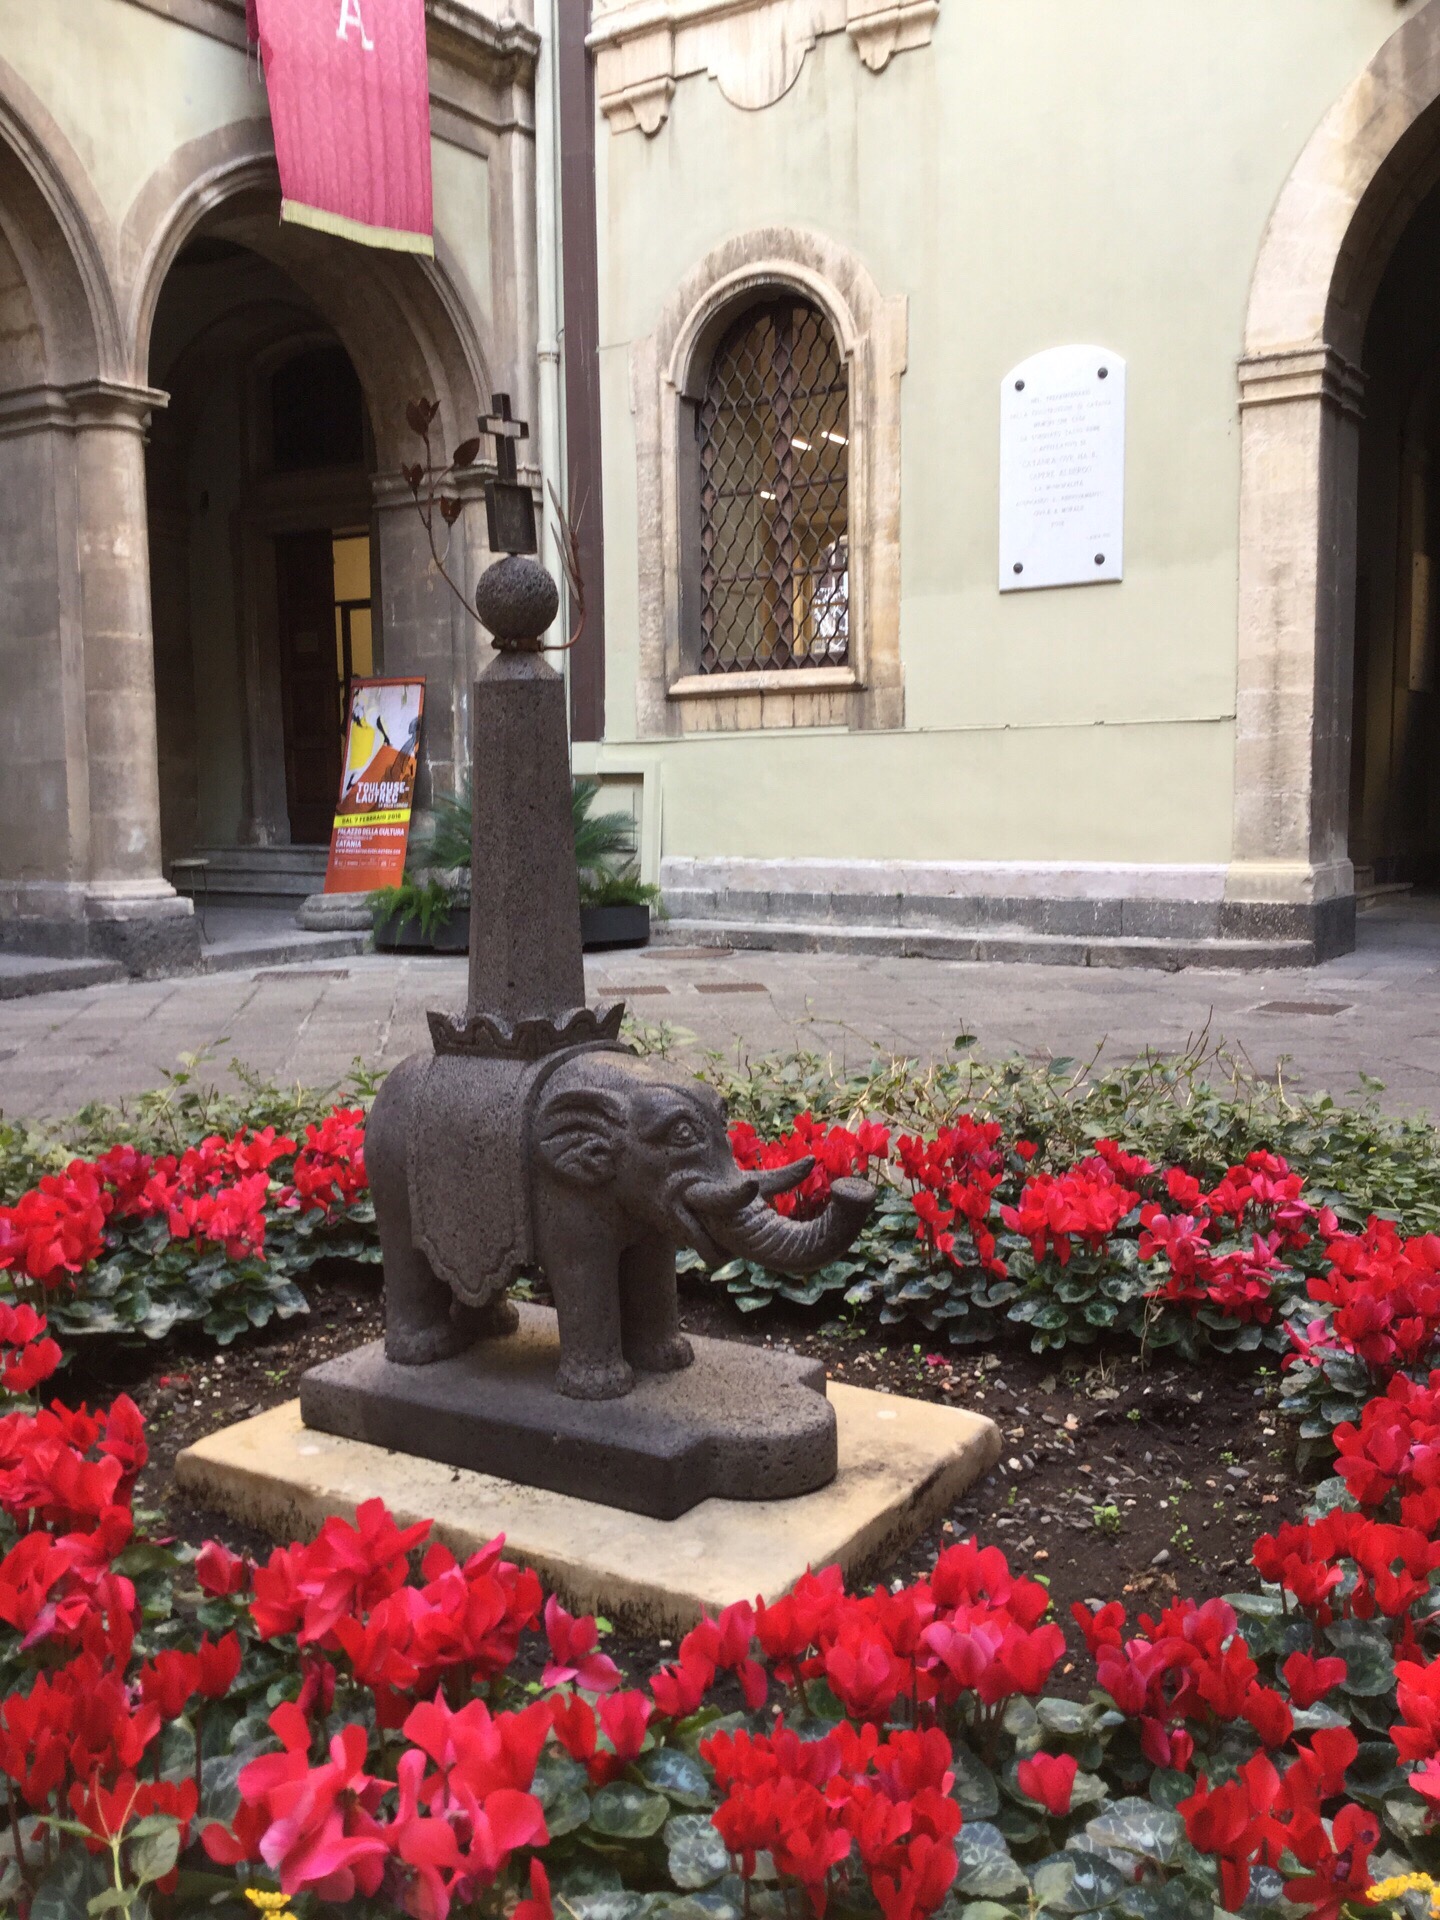 这里是Catania的政治、经济、文化和宗教中心。四周有大教堂，政府部门，还有展览中心。是游客打卡之